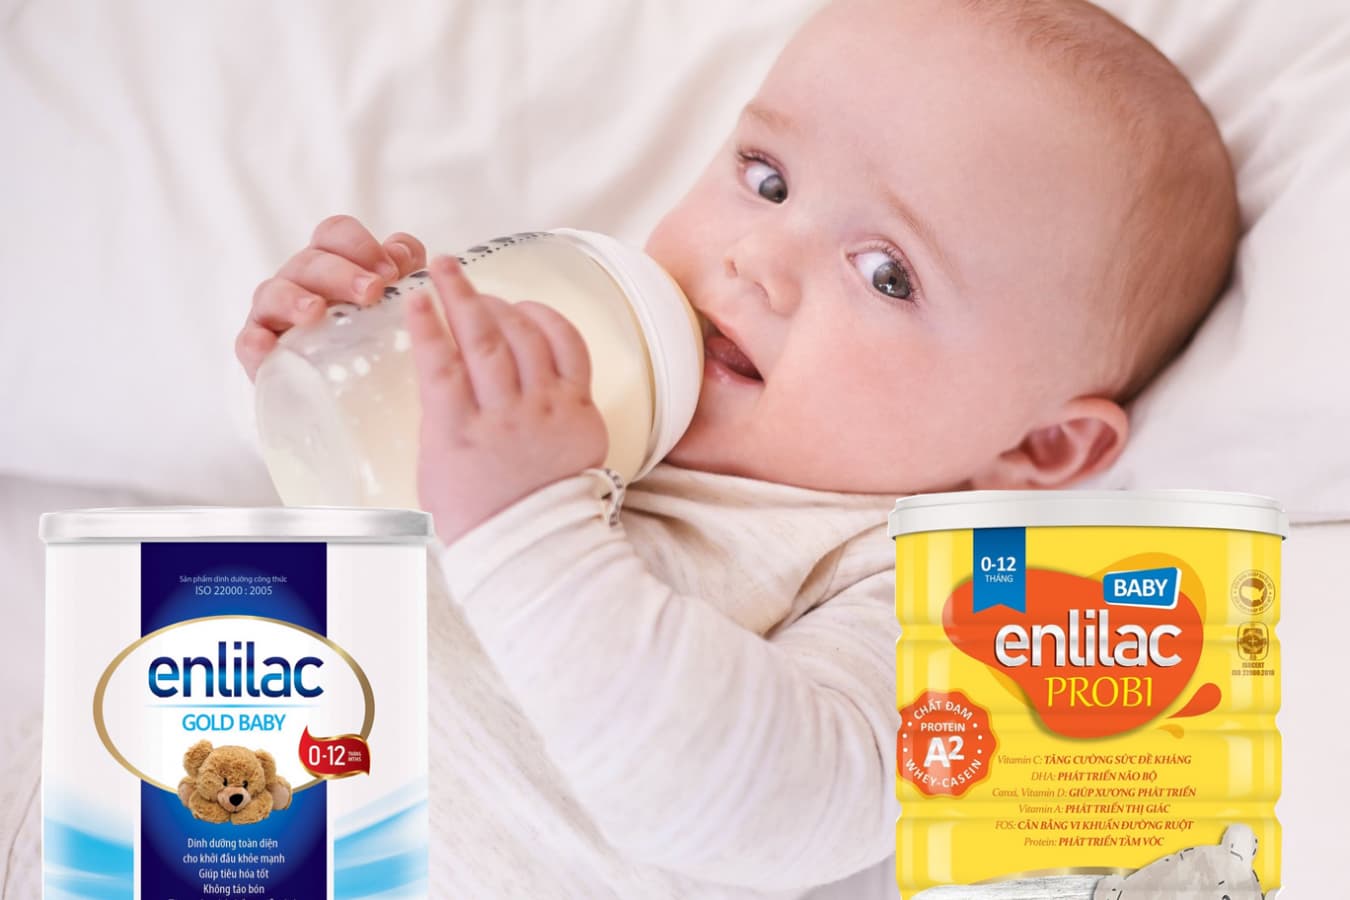 Điểm danh top 2 dòng sữa tốt nhất cho trẻ sơ sinh của Enlilac